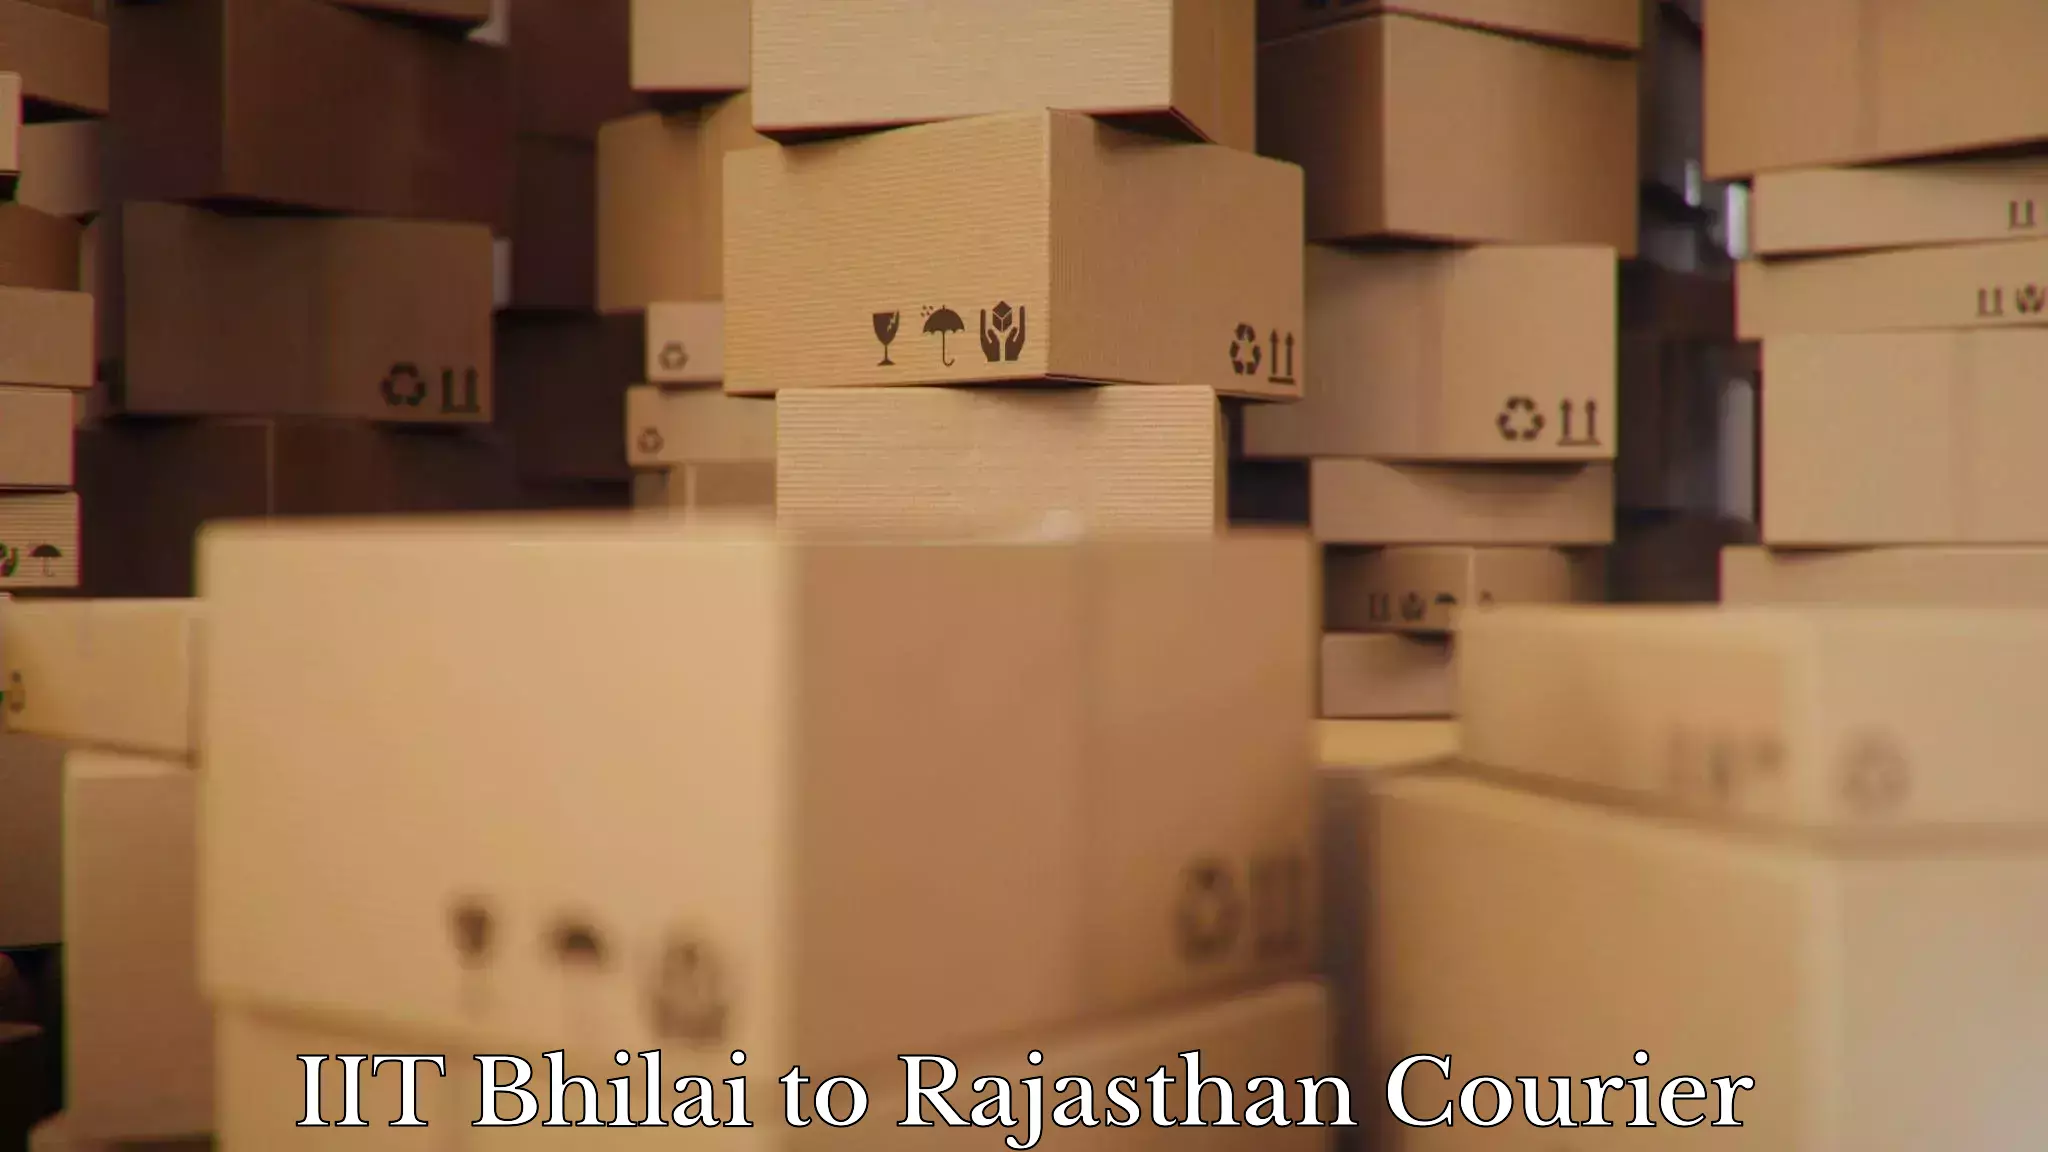 Customized furniture moving IIT Bhilai to Rajasthan